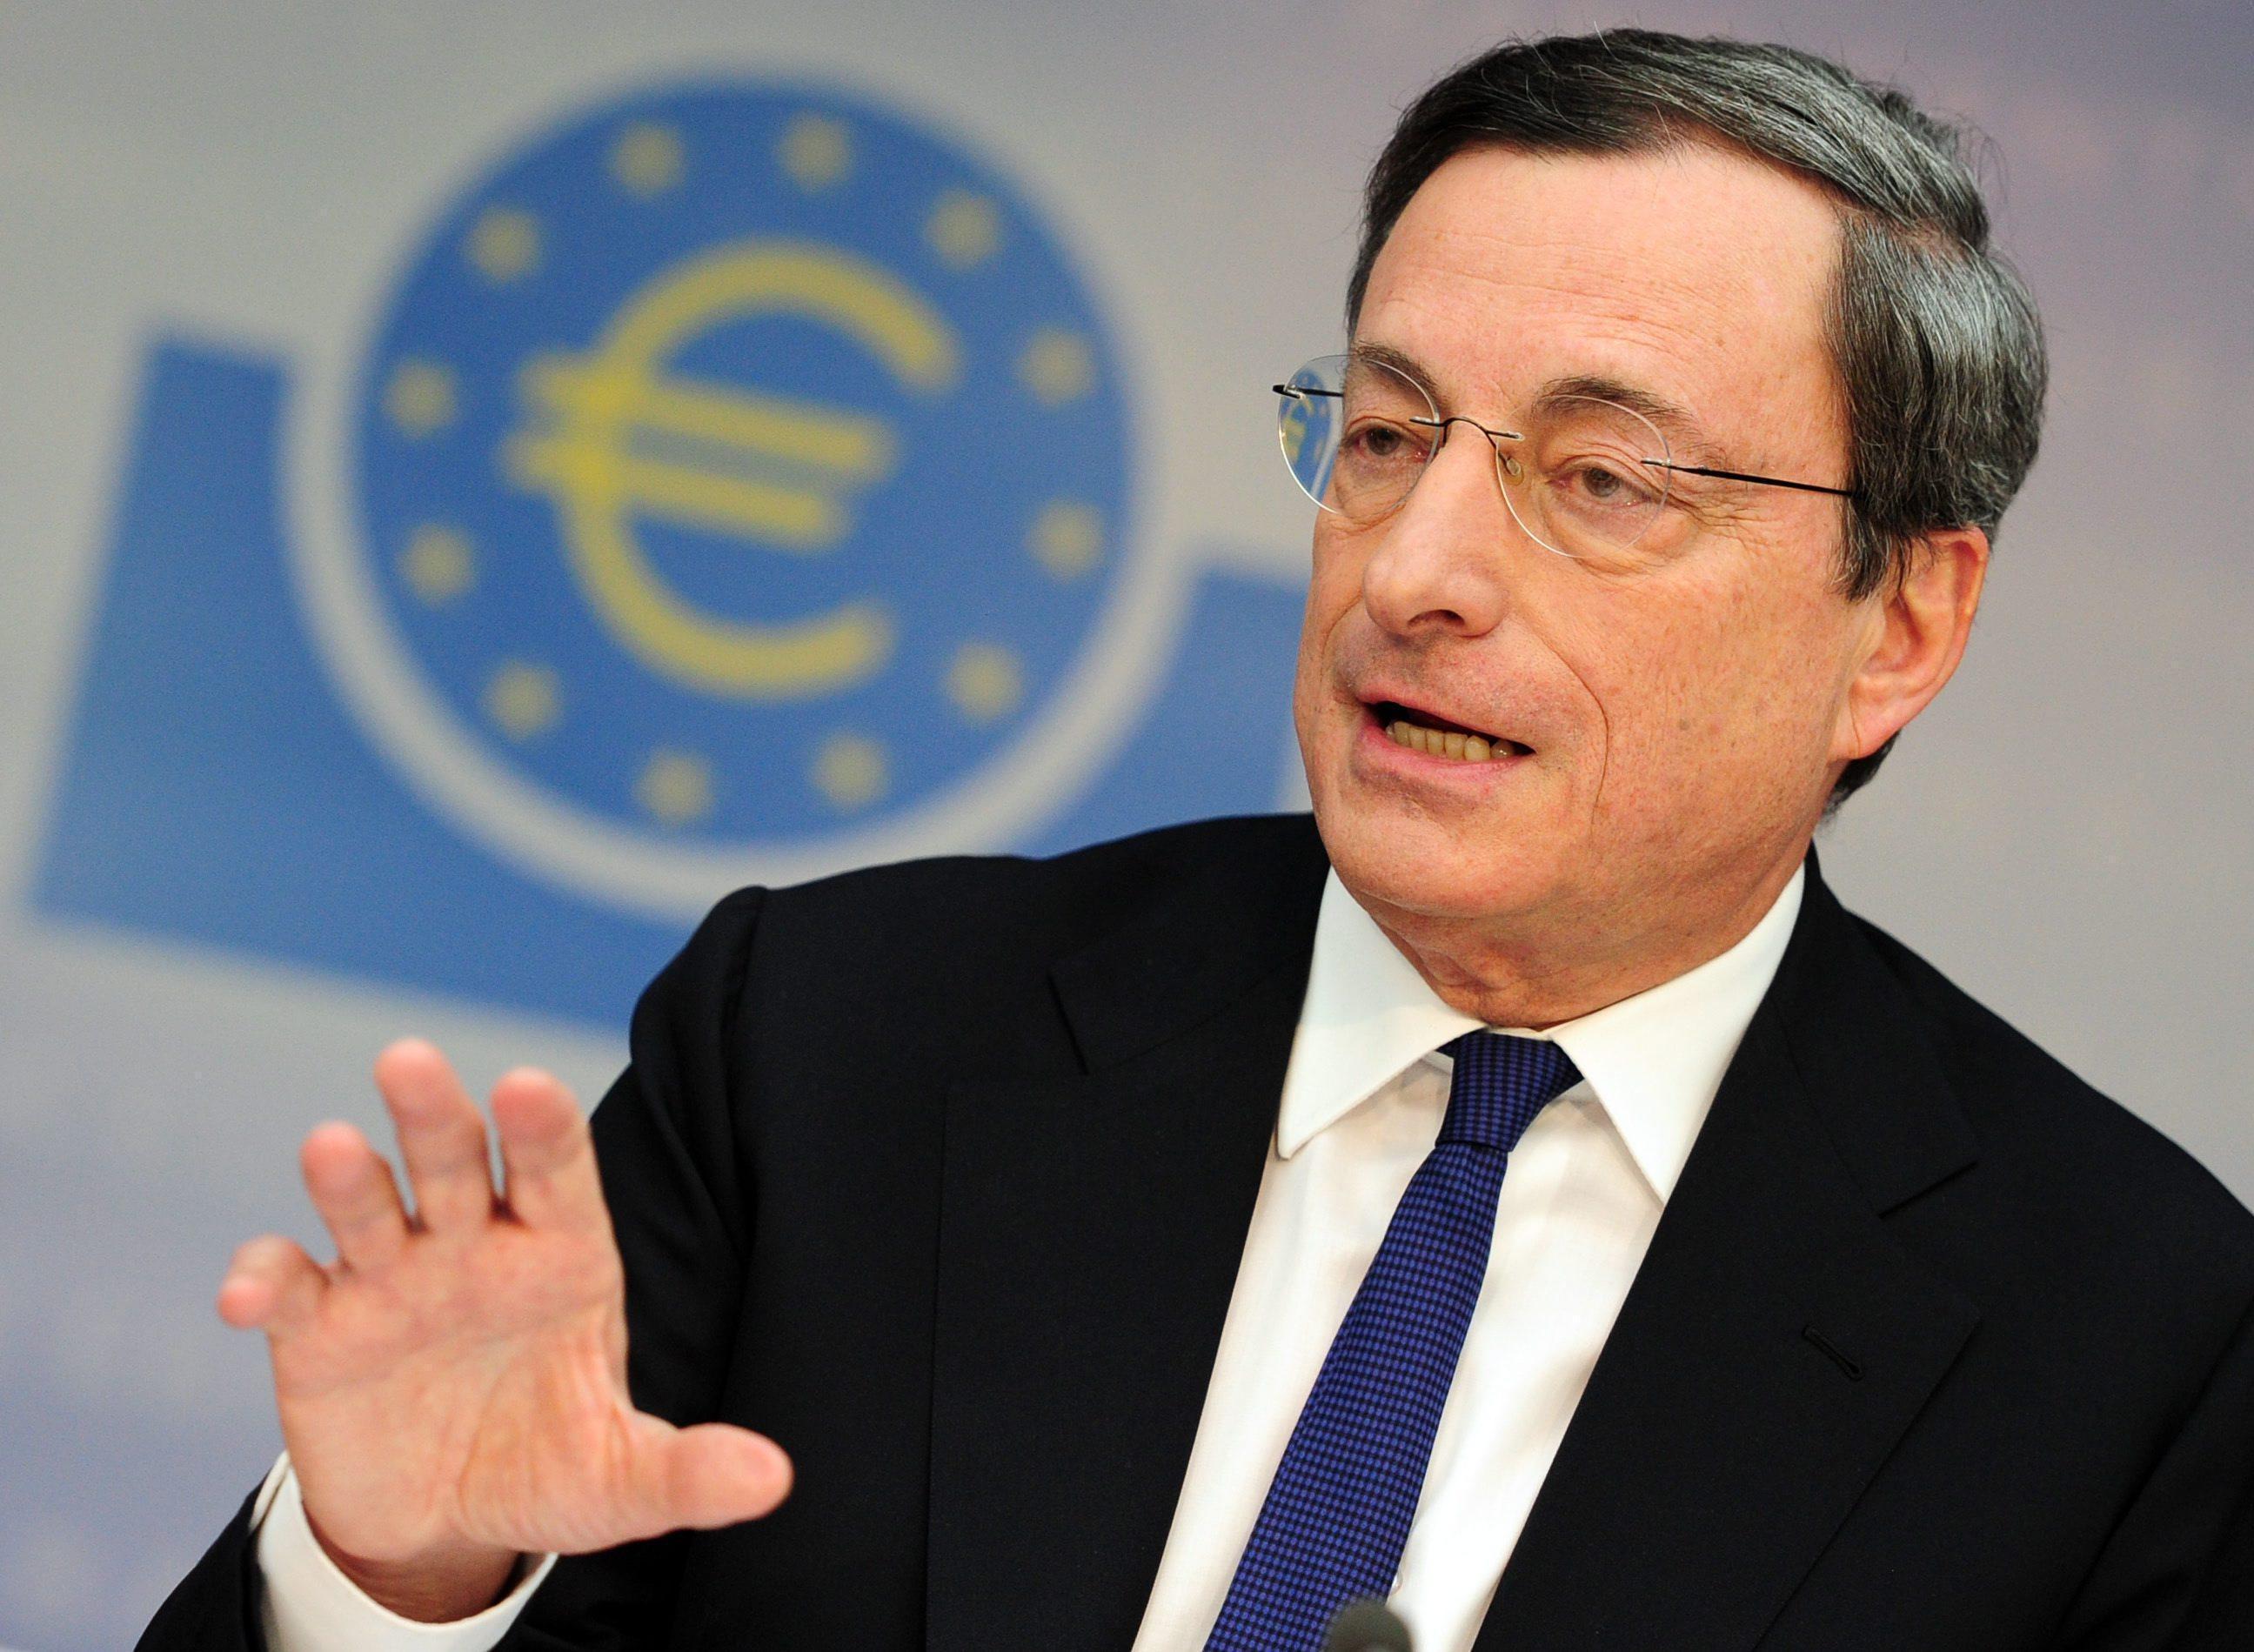 Draghi acalla rumores sobre disensiones y sigue con la puerta abierta a más medidas